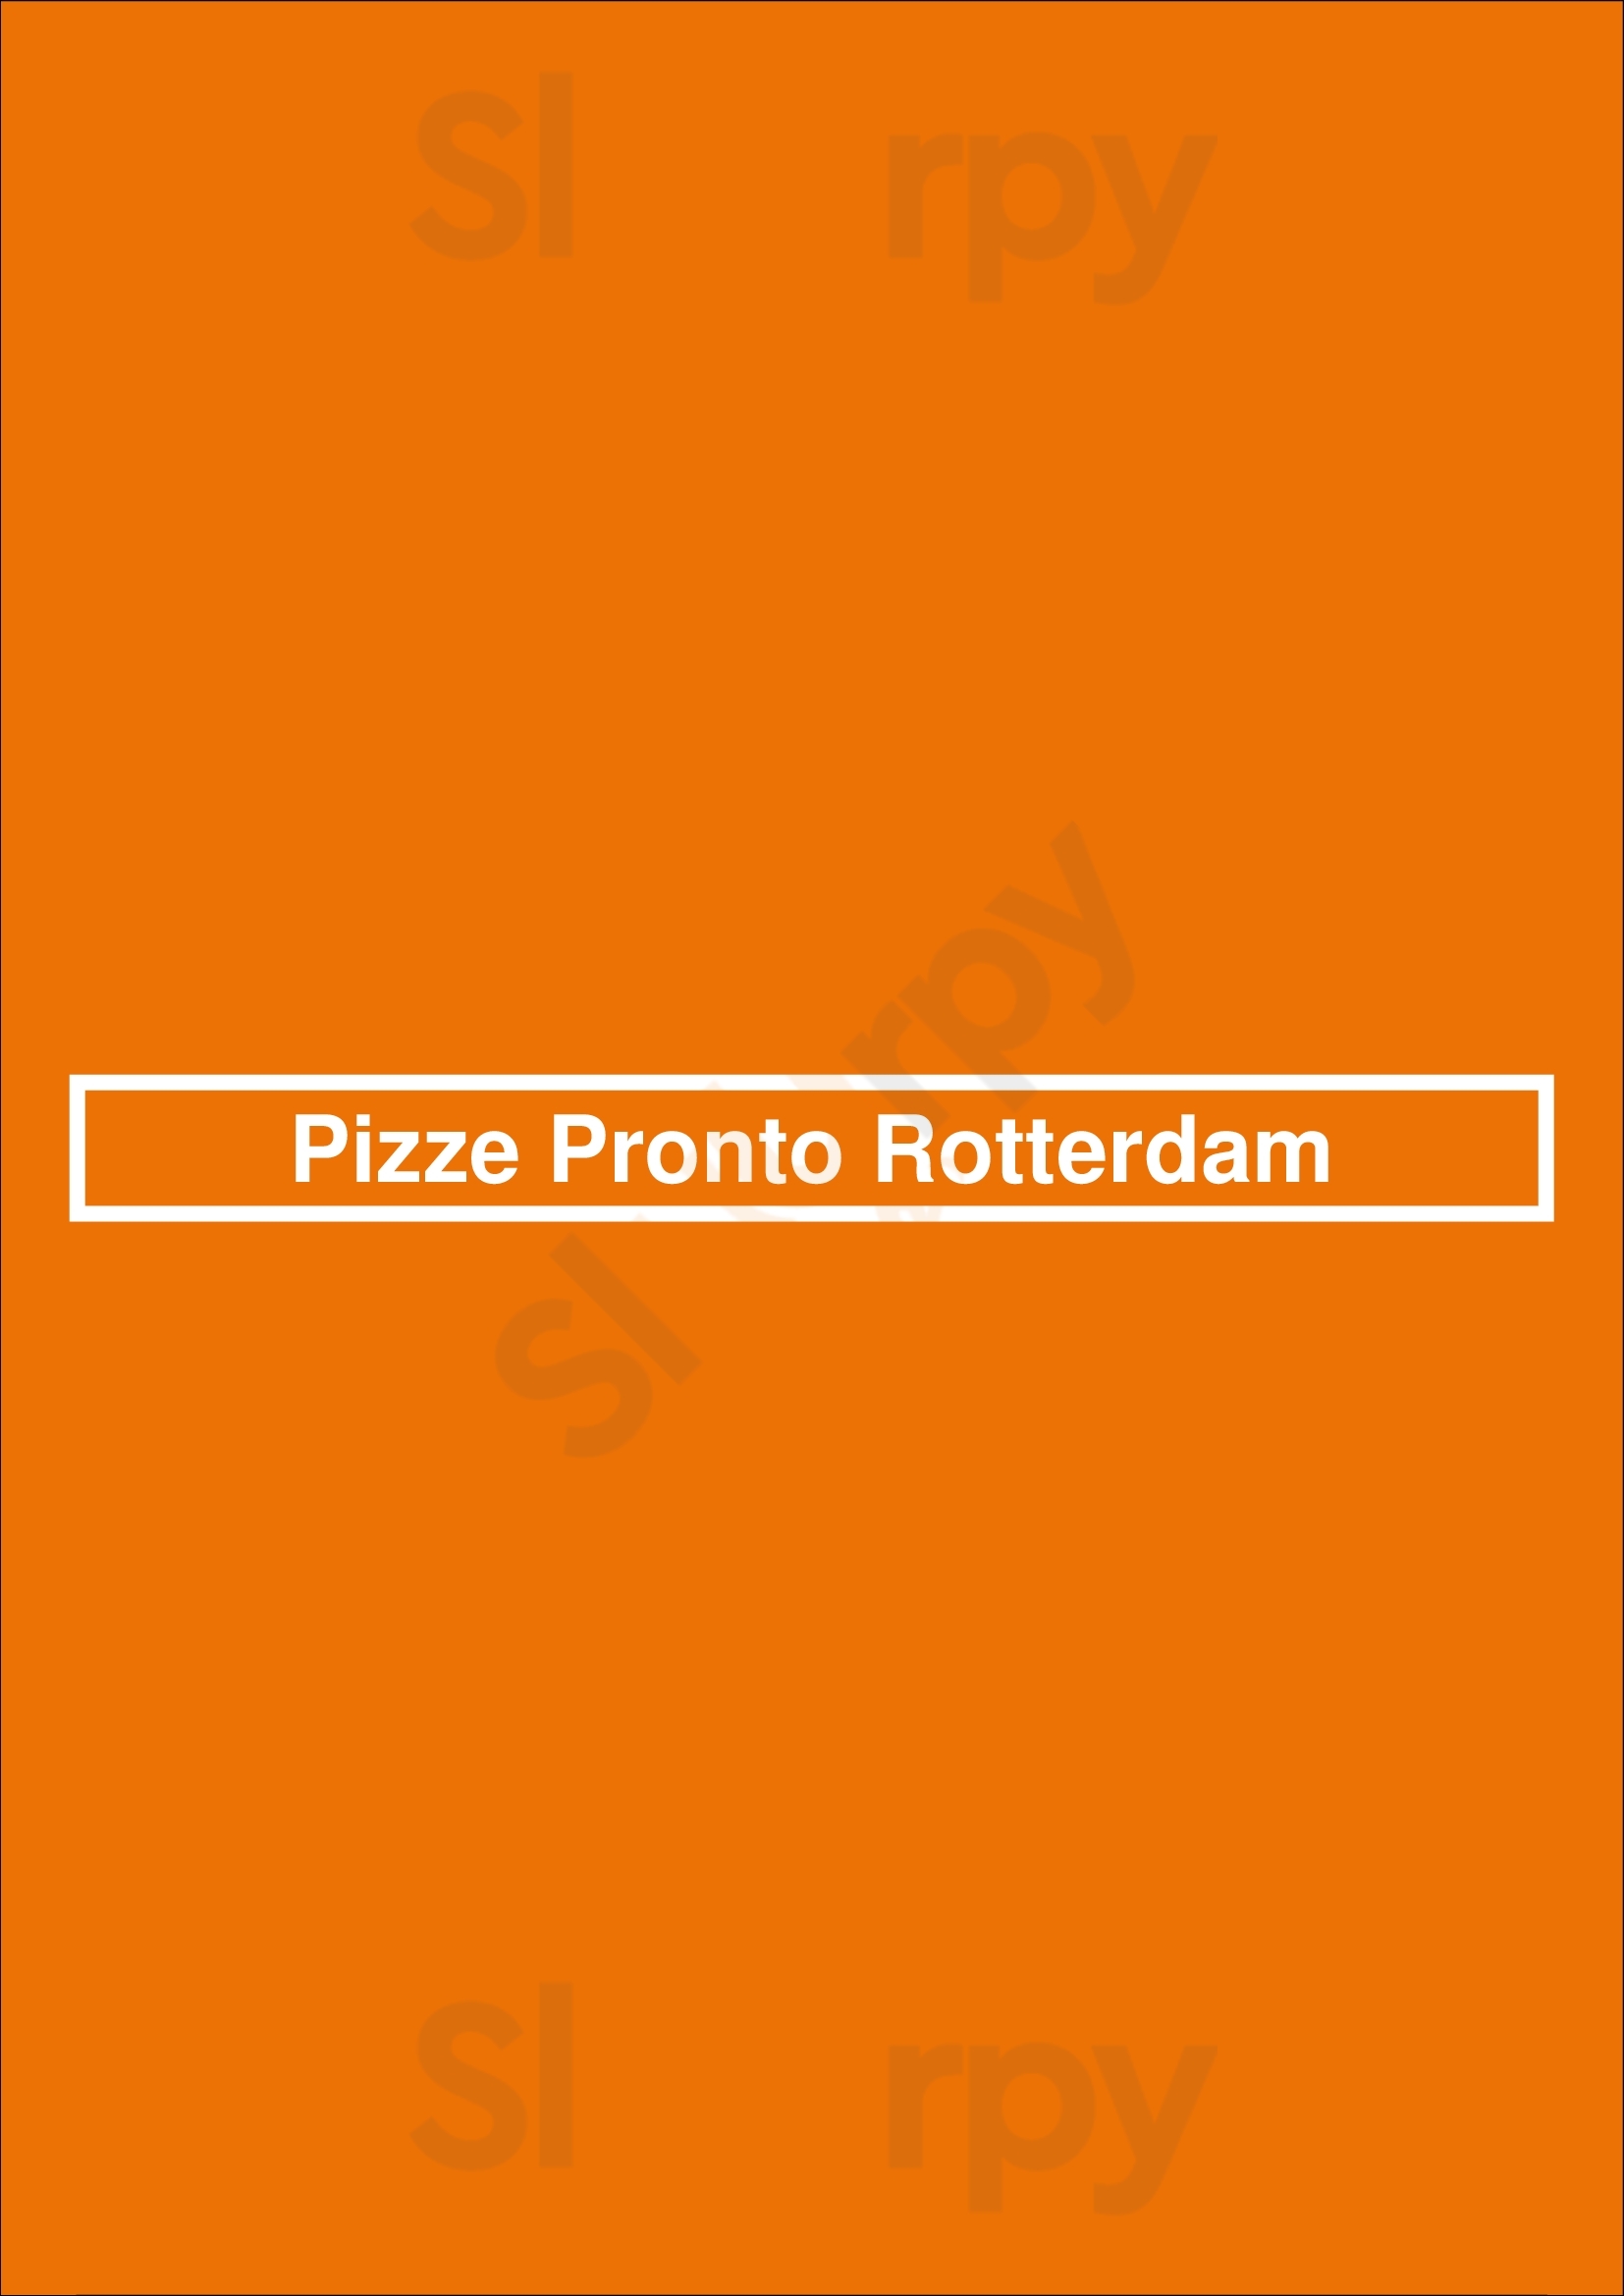 Pizze Pronto Rotterdam Rotterdam Menu - 1